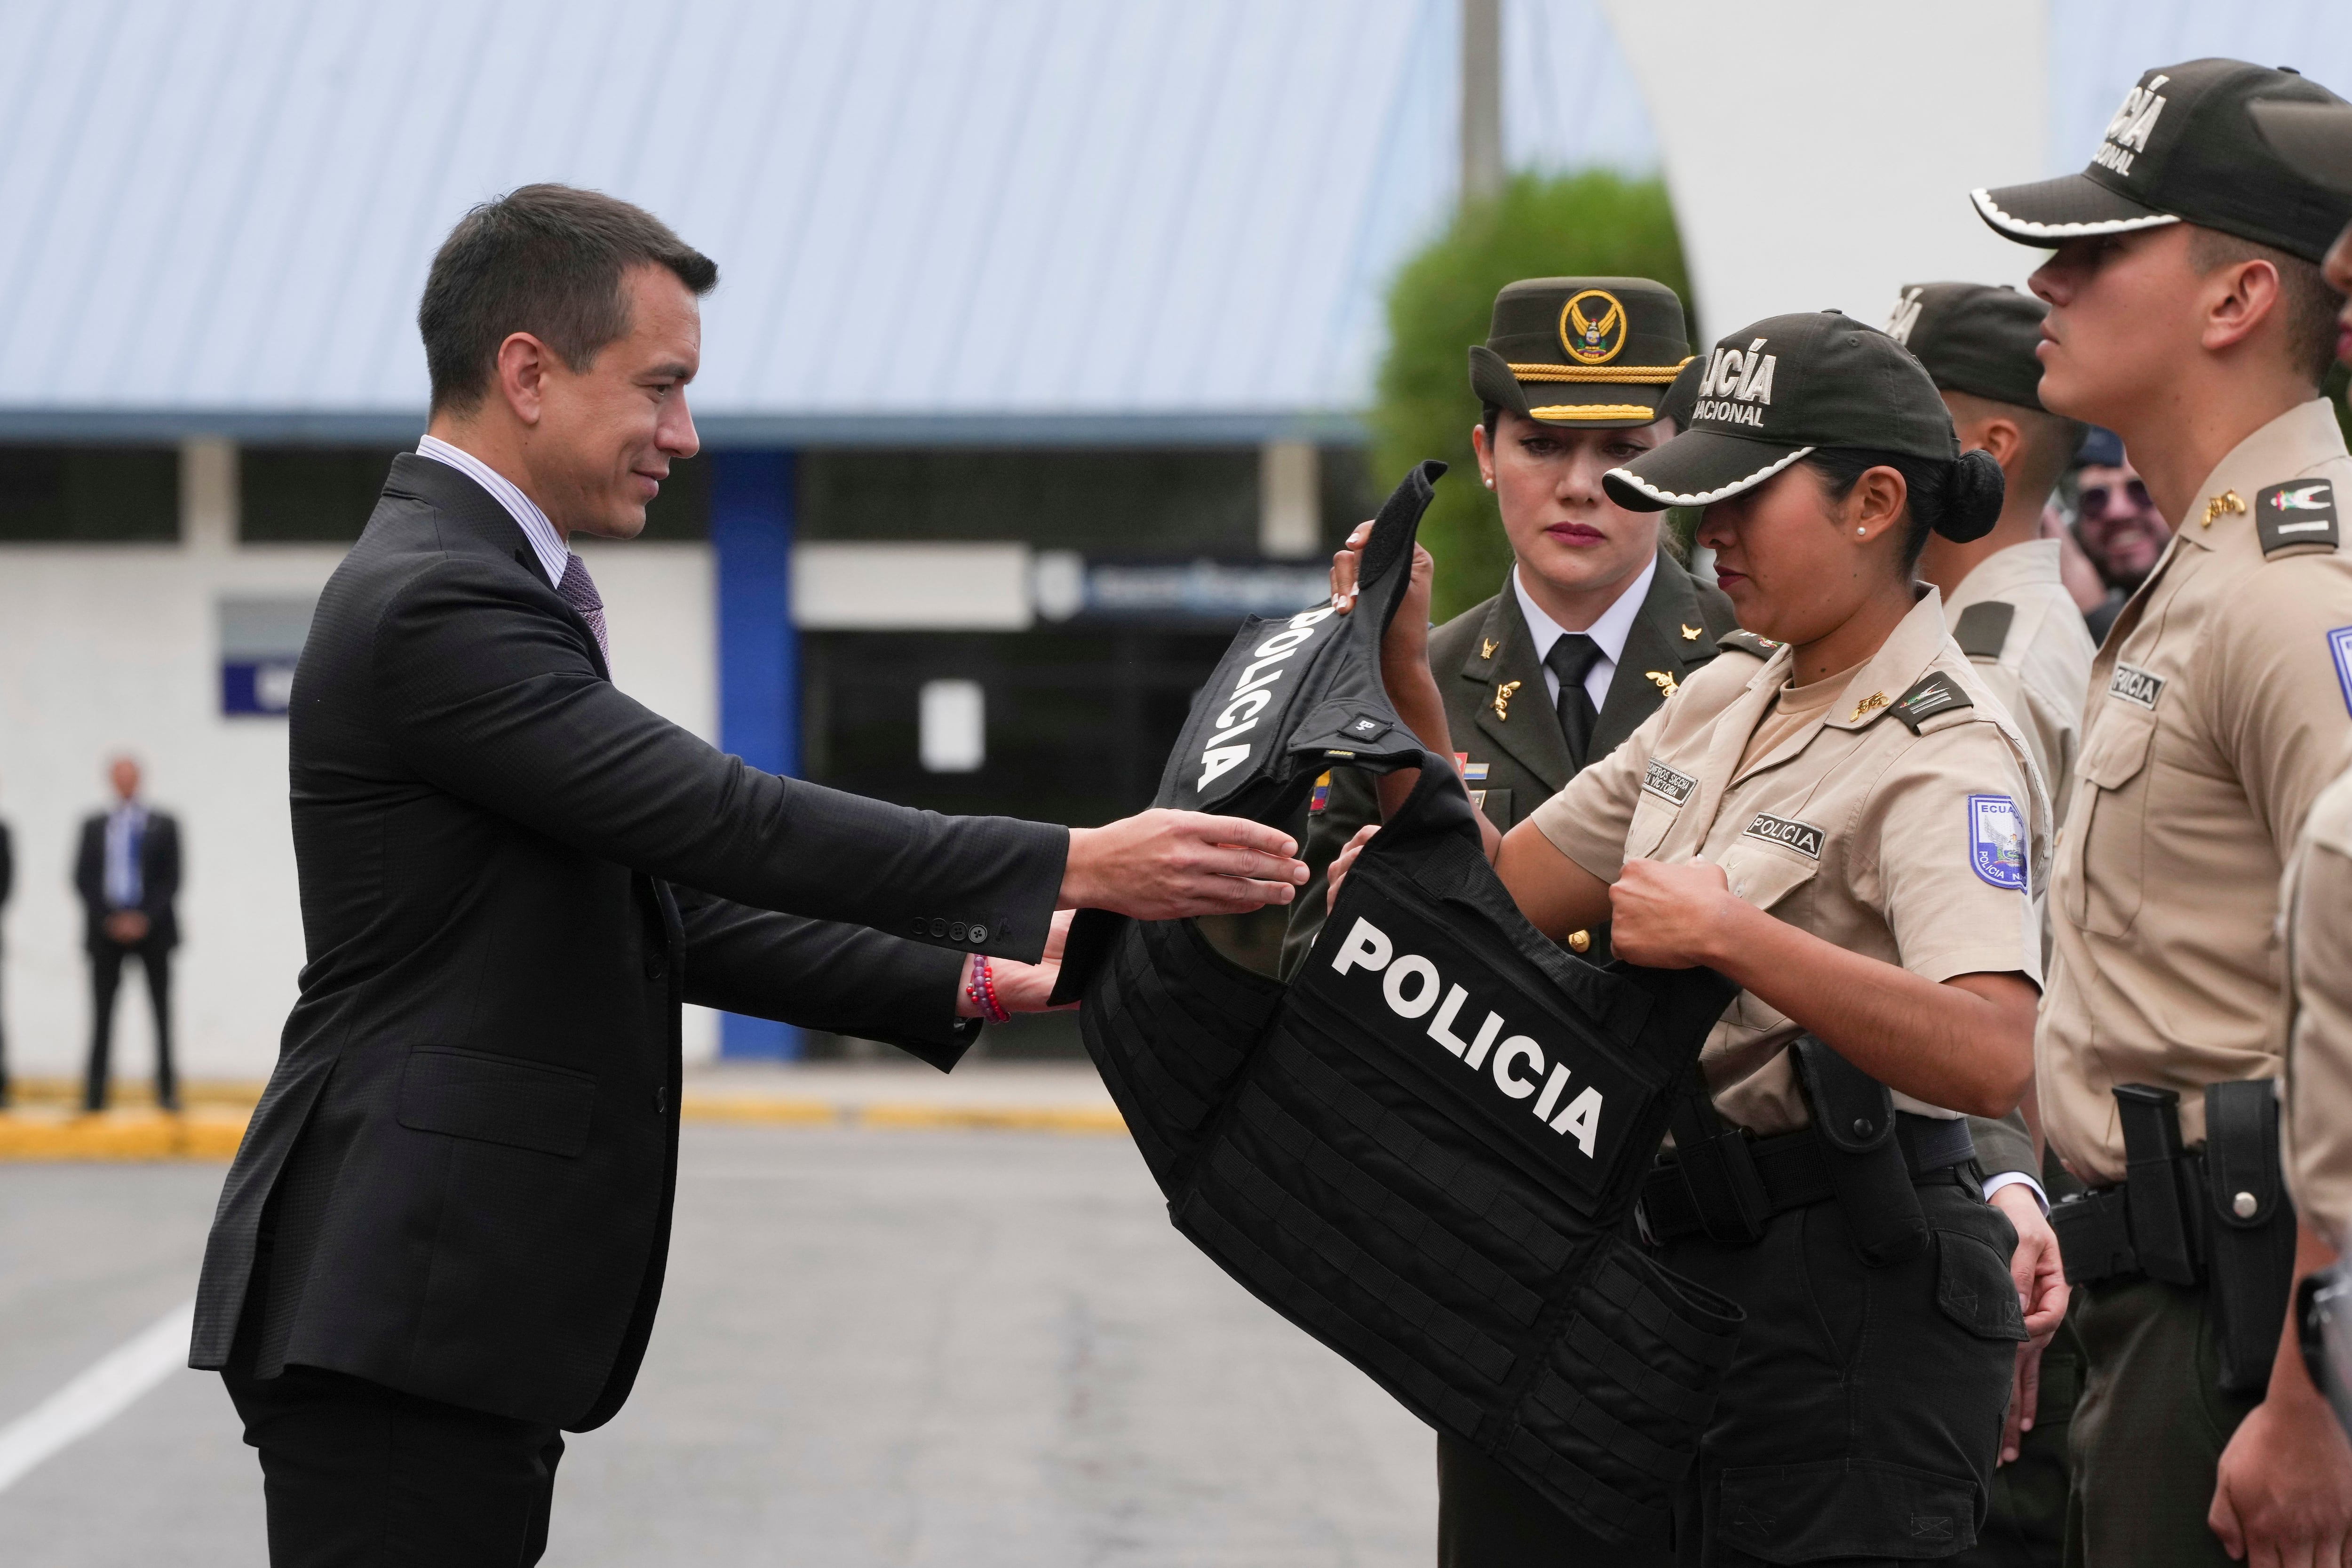 El presidente de Ecuador, Daniel Noboa, sujeta un chaleco antibalas en una ceremonia de entrega de equipamiento a la policía (AP Foto/Dolores Ochoa)